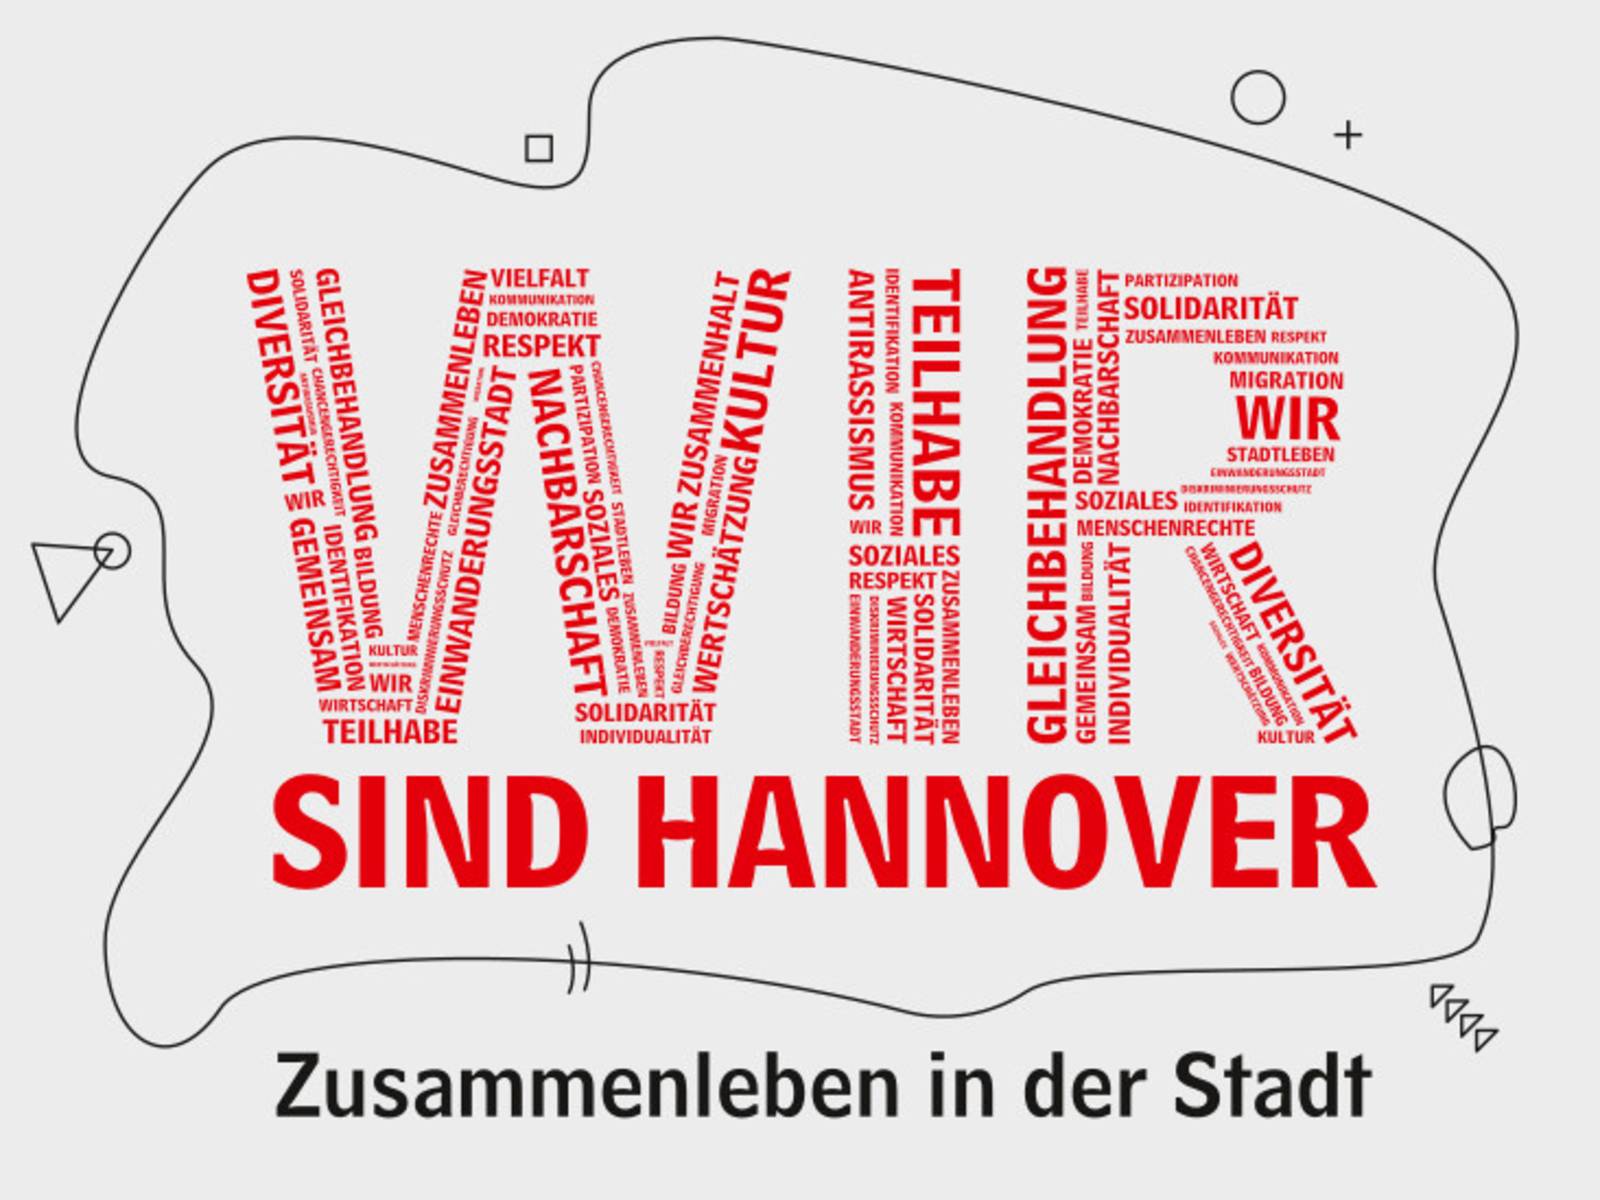 Schriftzug "WIR sind Hannover"